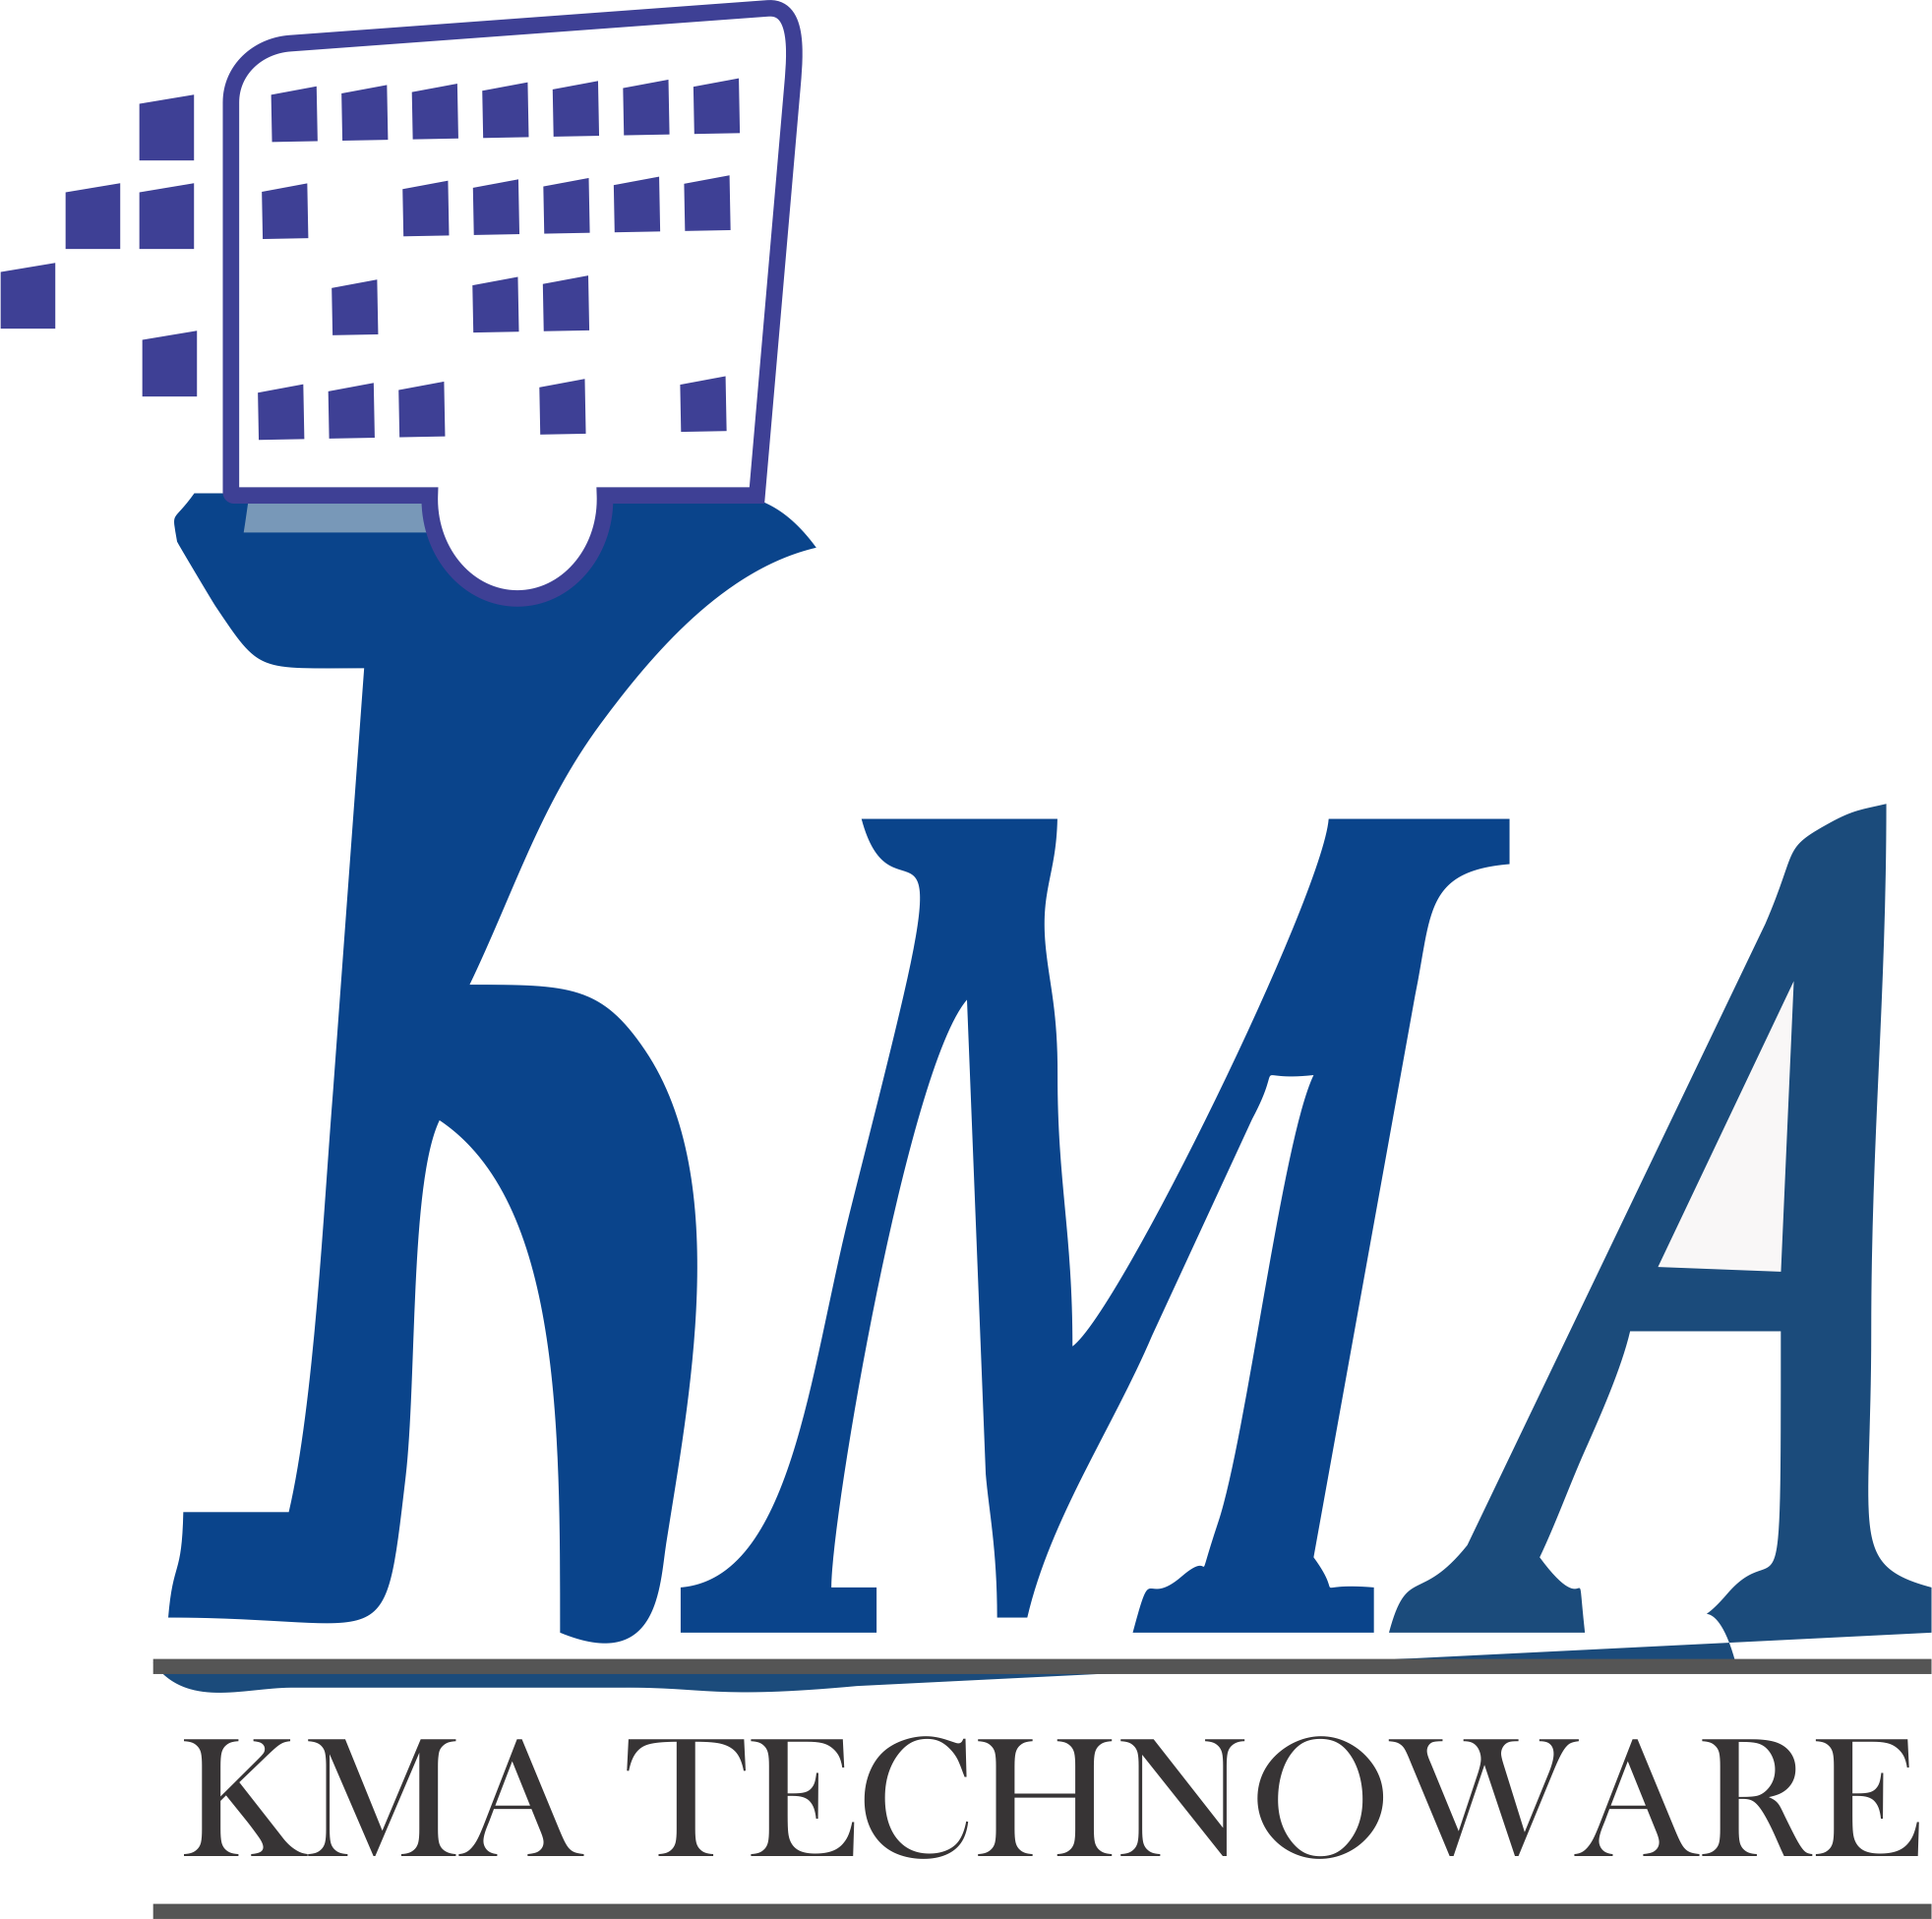 KMA Technoware